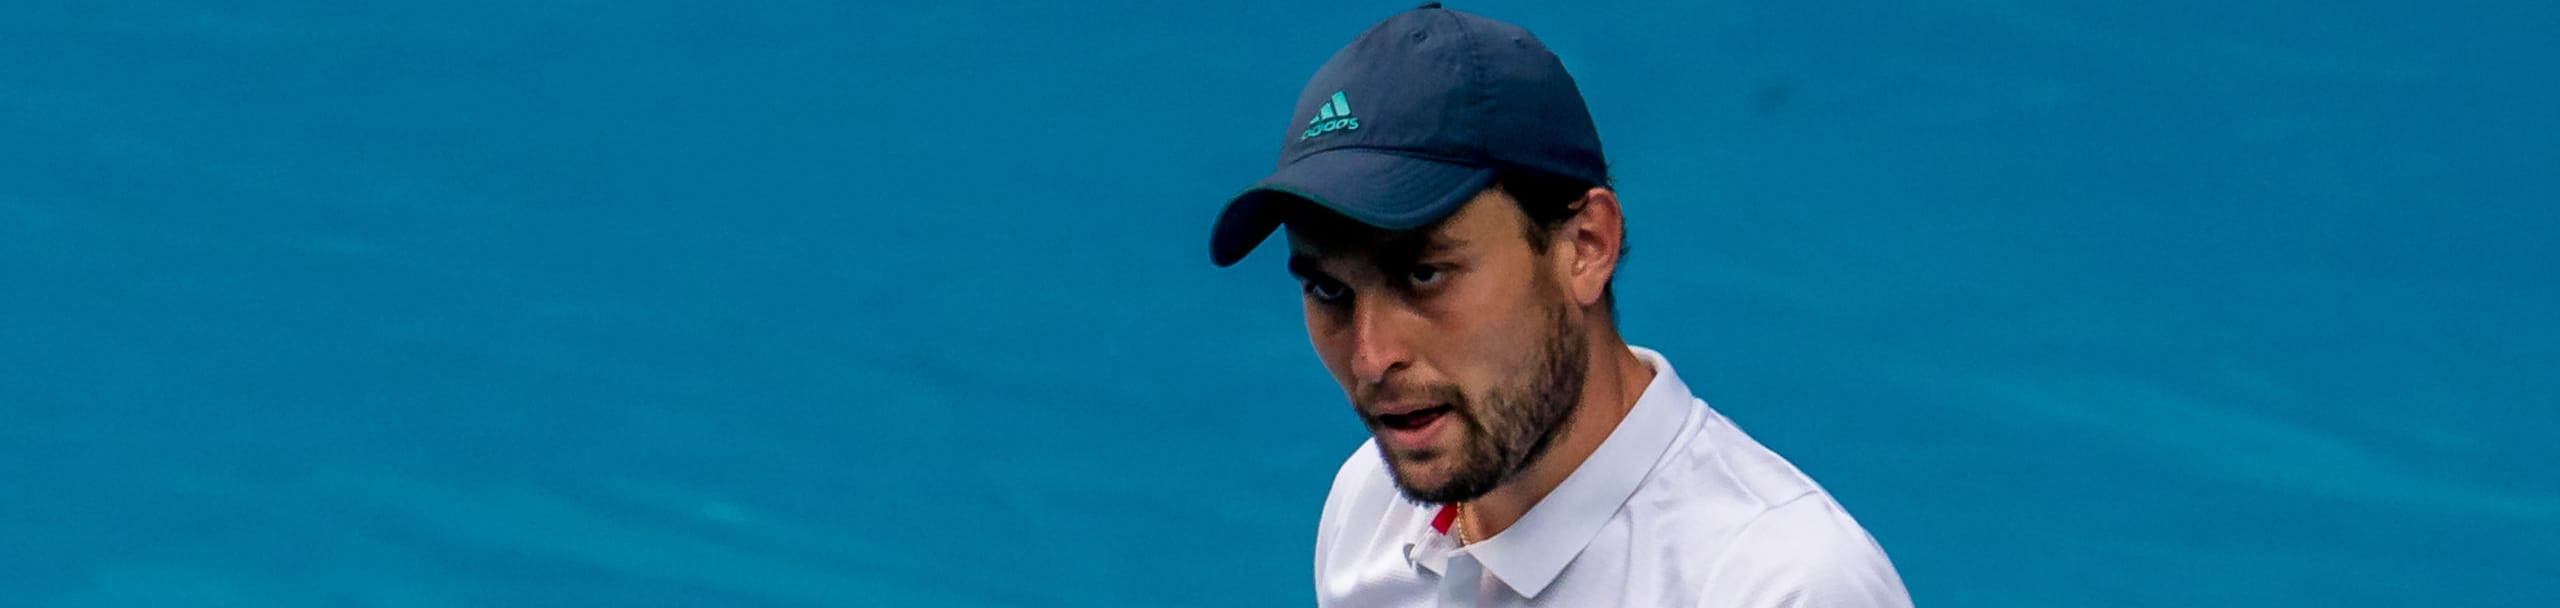 Pronostici Australian Open: Djokovic e la sorpresa Karatsev per la finale, Williams per la storia